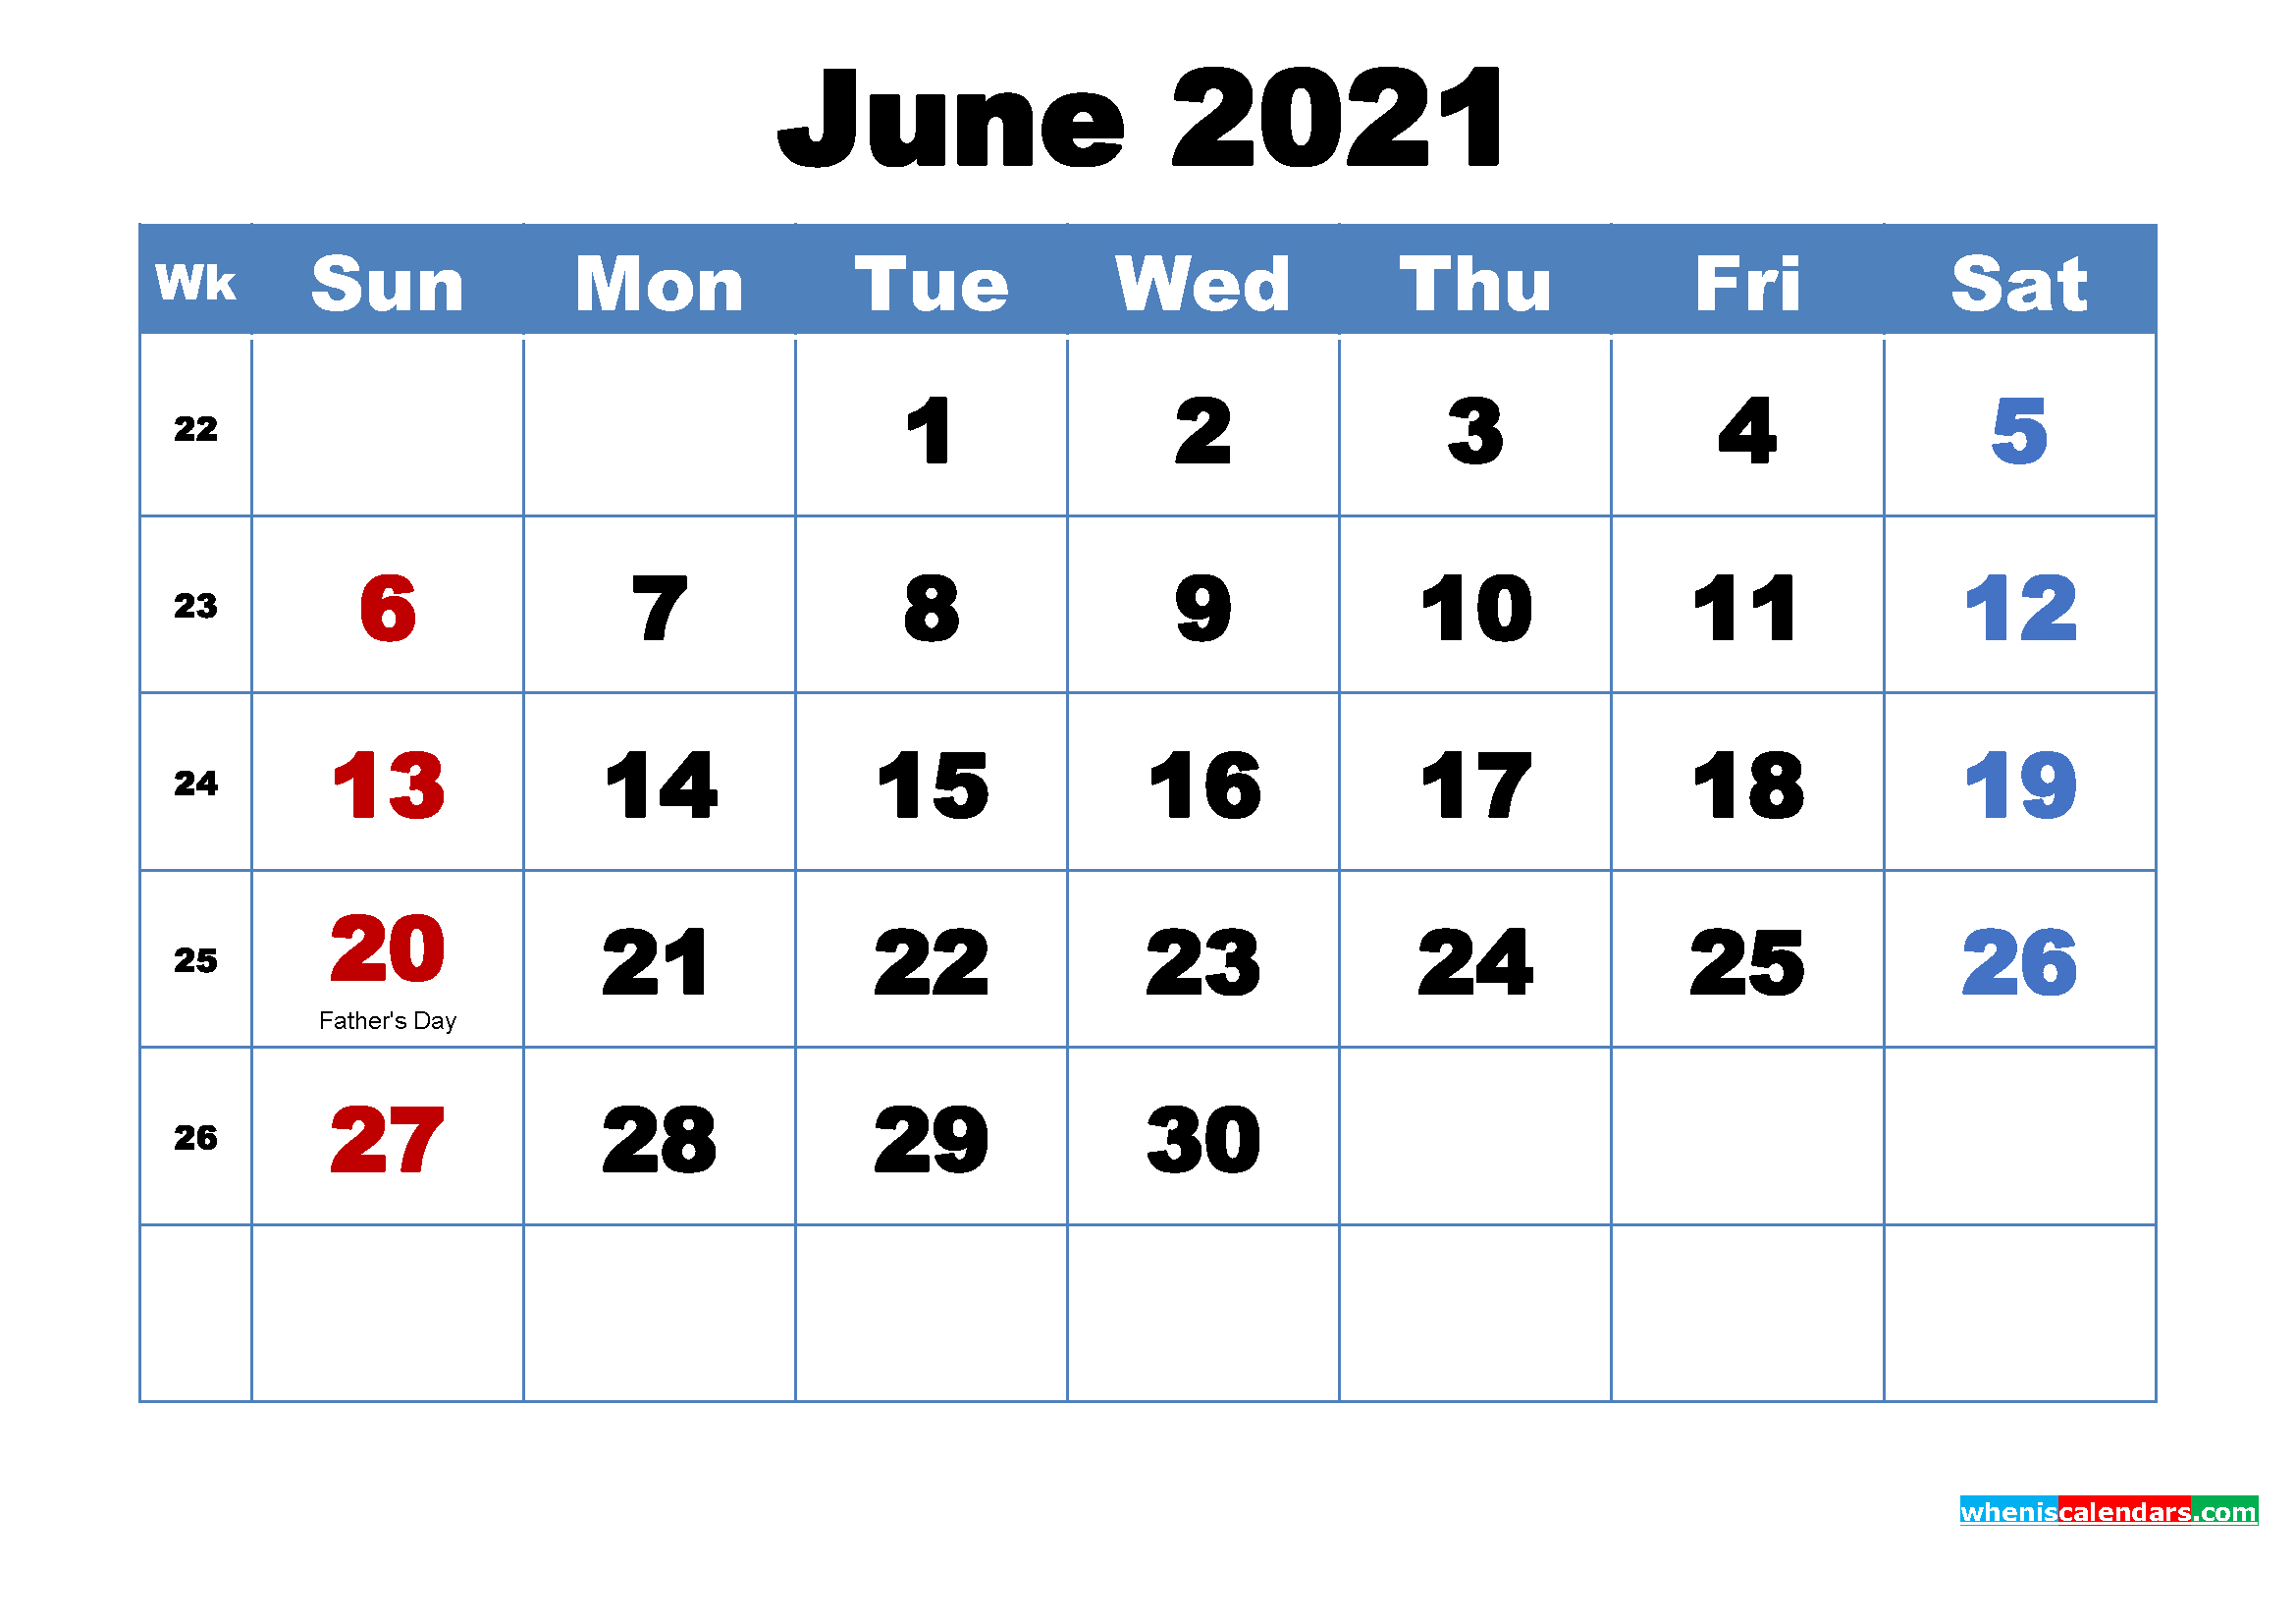 June 2021 Calendar Wallpaper Free Download-June 2021 Calendar Printable